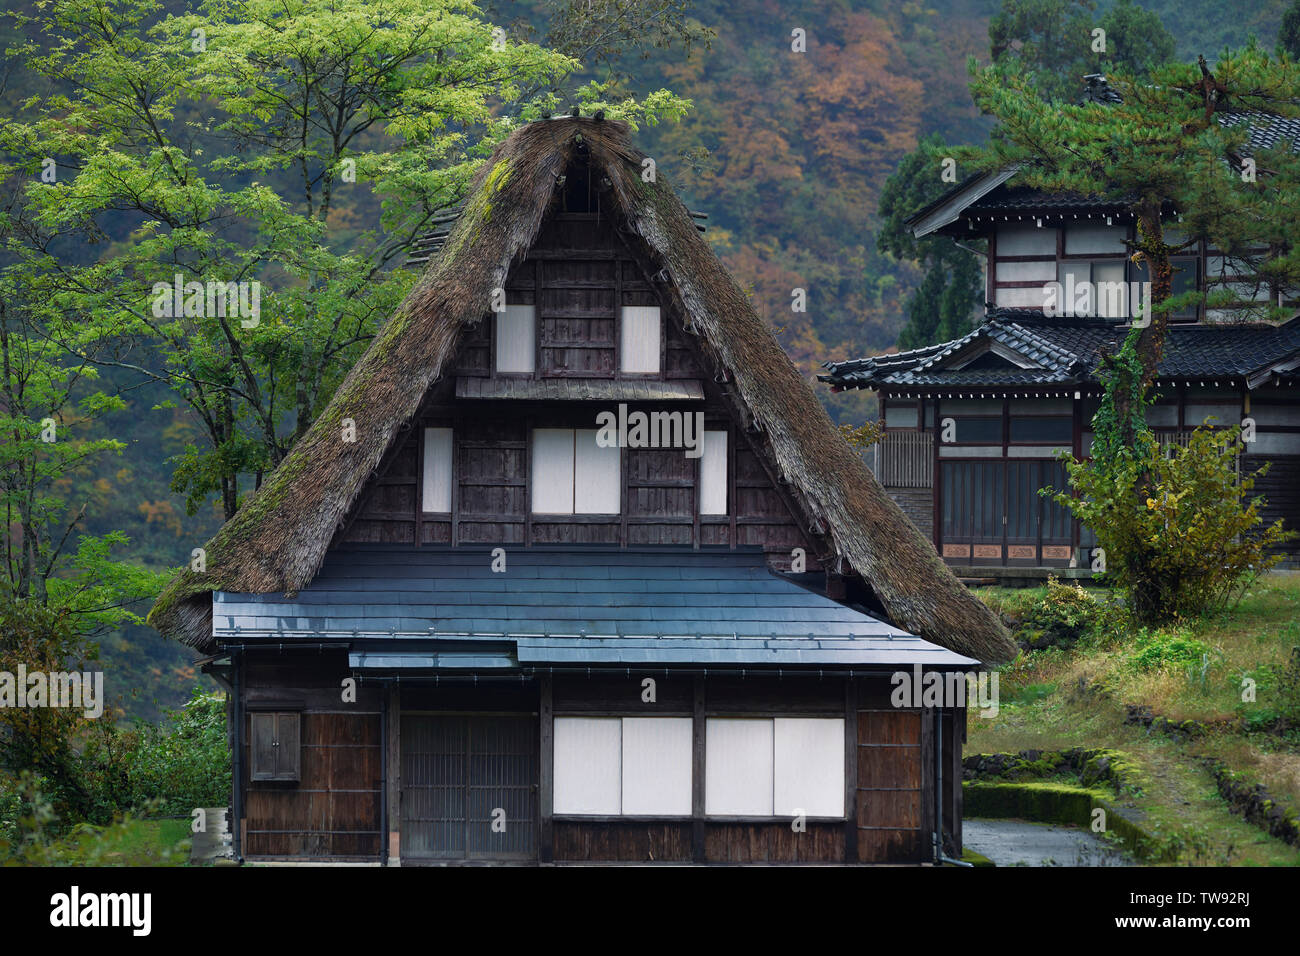 Japonesa tradicional estilo Gassho-casa rural de madera con techo de paja en Ainokura Mountain Village la prefectura de Toyama, Japón 2018. Gasshō-zukuri 合掌造 Foto de stock